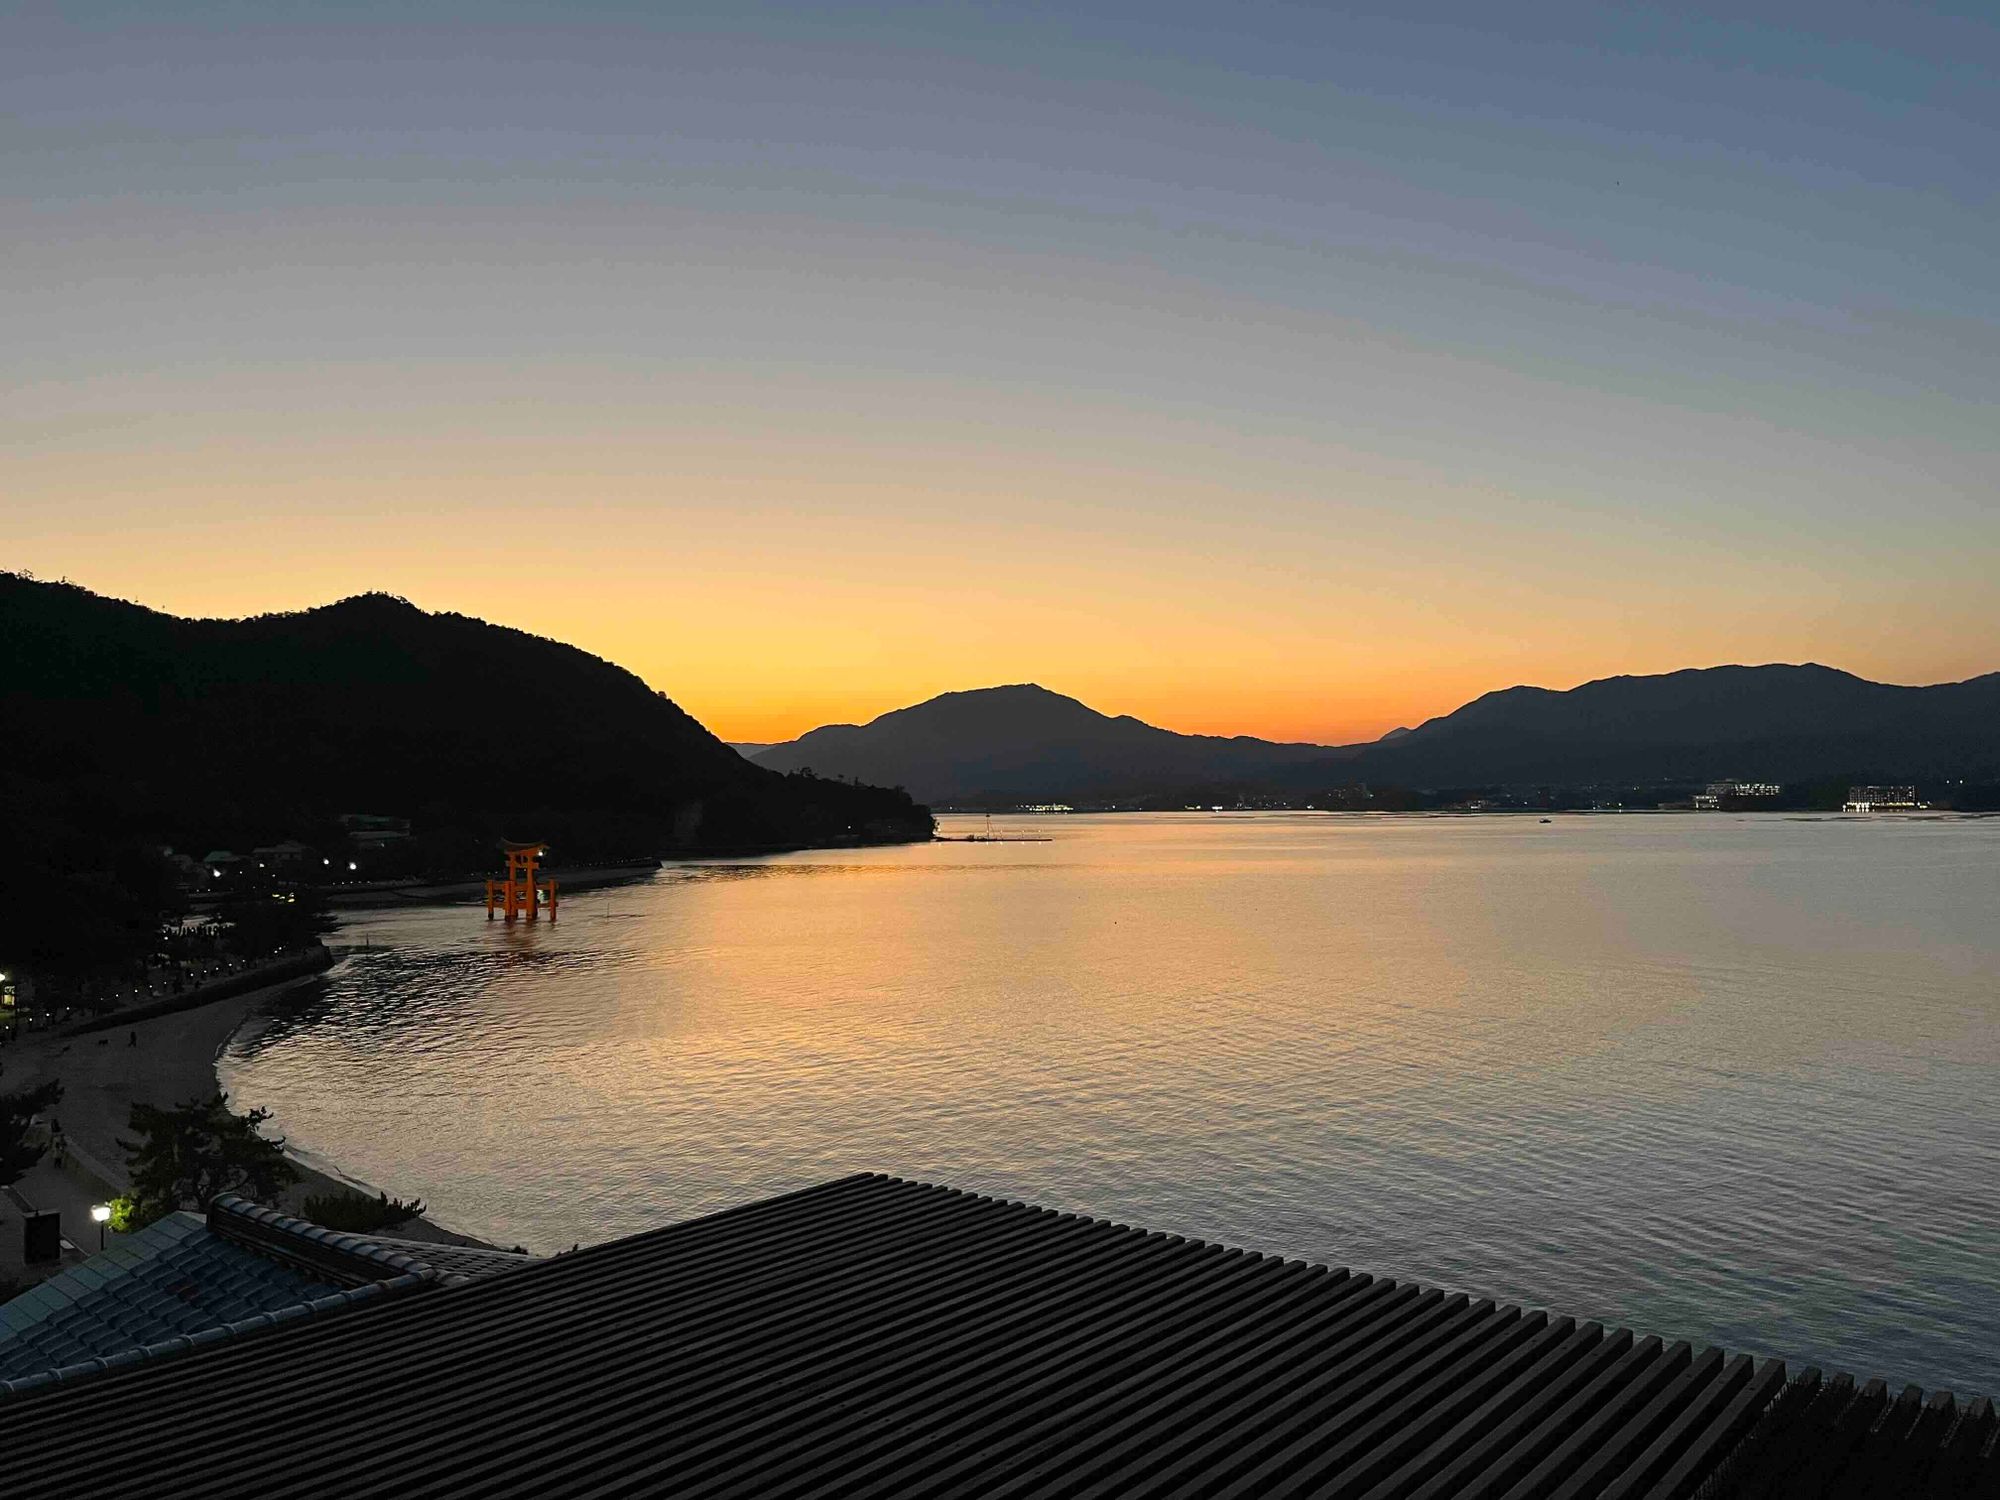 Itsukushima shrine at sunset with water